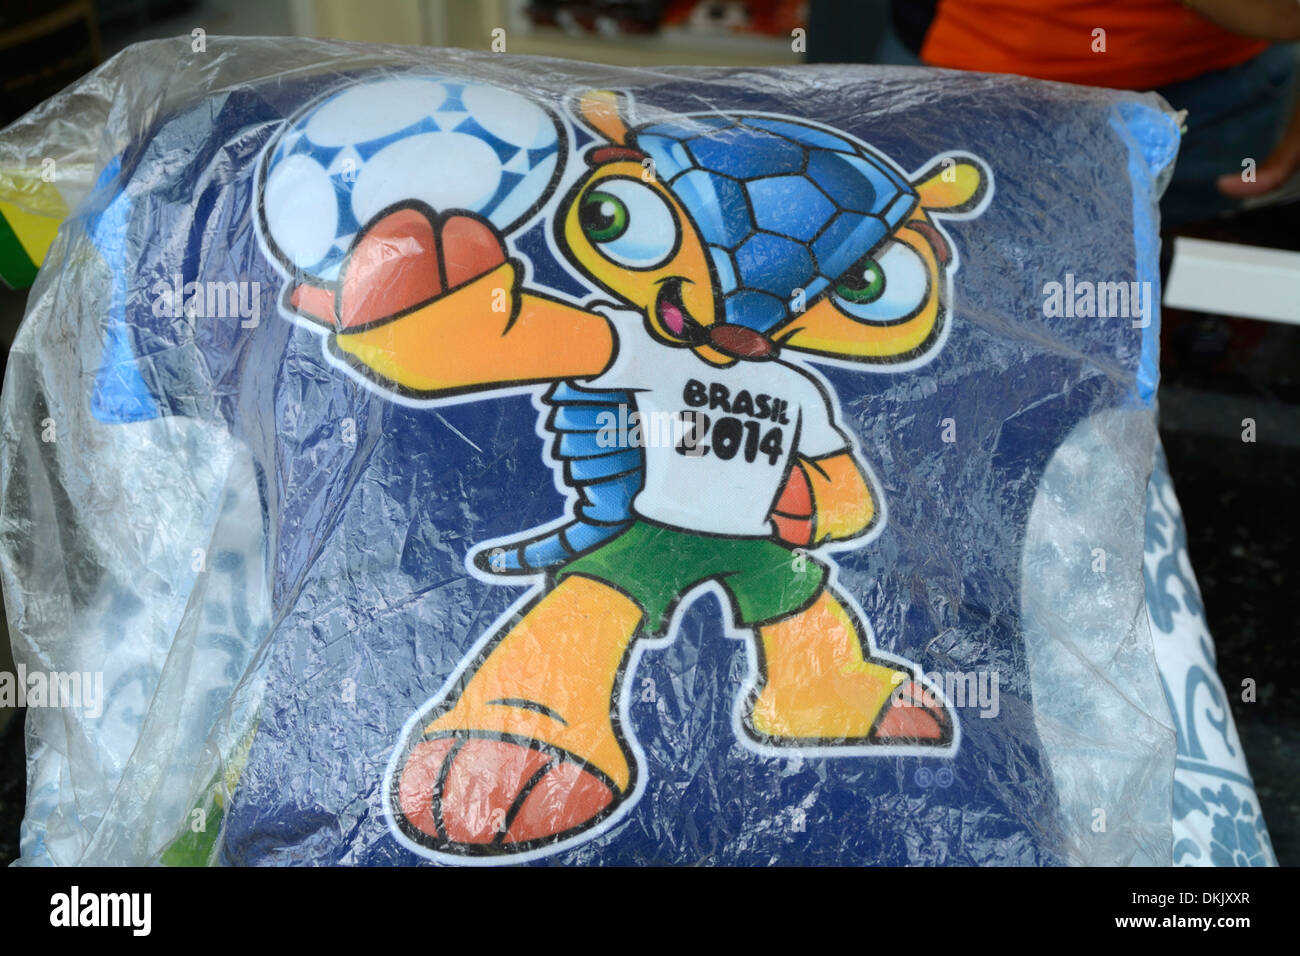 The official mascot of the Brazil World Cup 2014 on sale at a football souvenir kiosk on Copacabana beach in Rio de Janeiro, Brazil Stock Photo